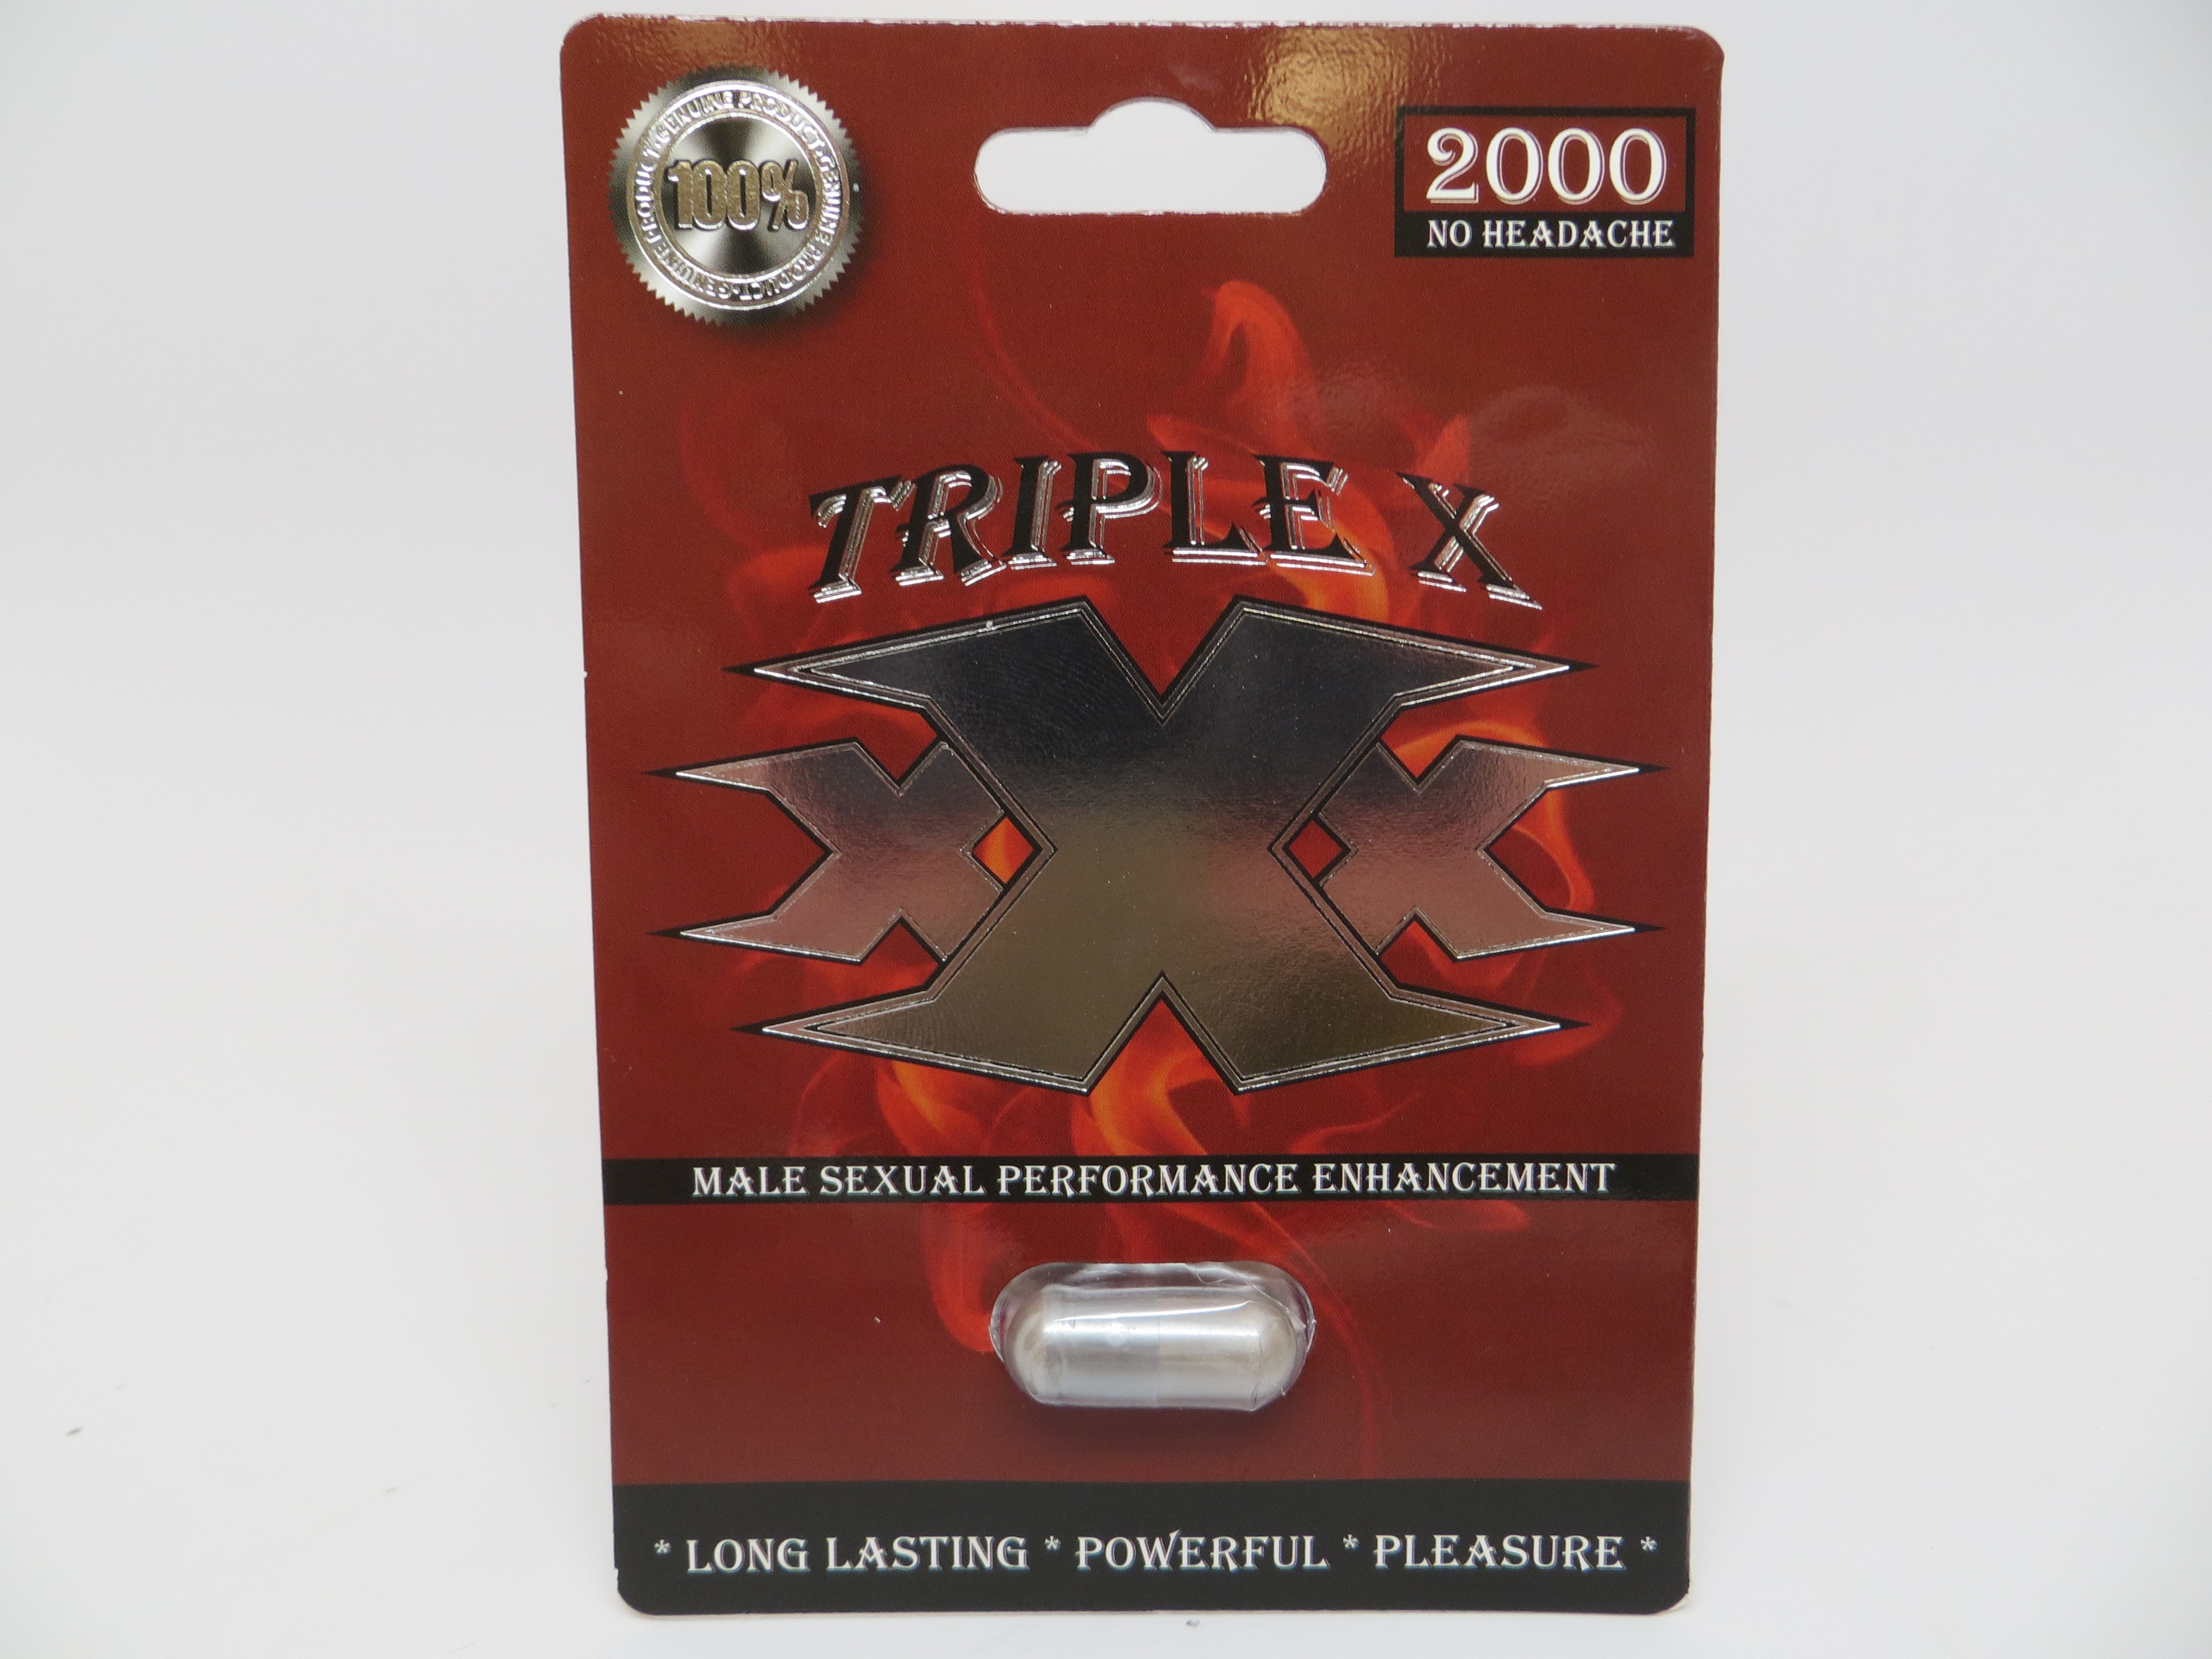 Billede af det ulovlige produkt: Triple X 2000